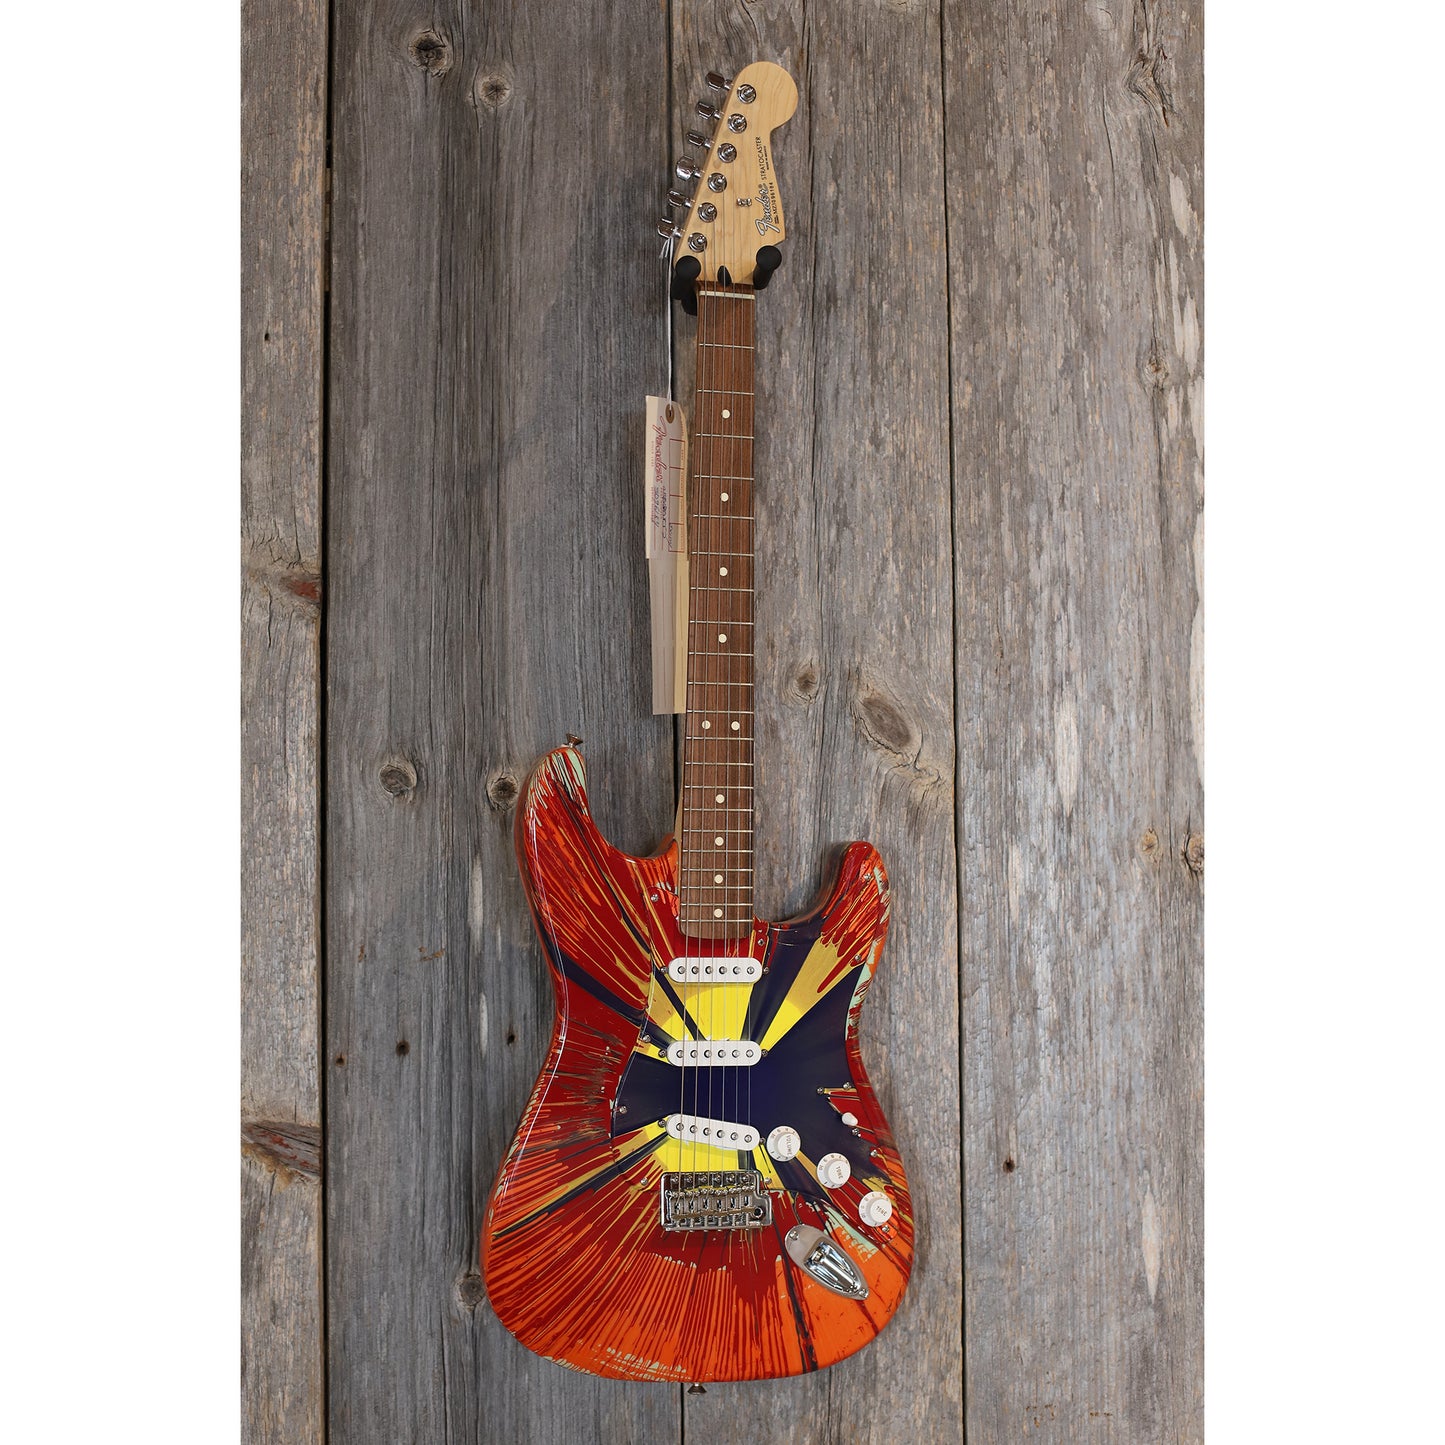 2003 Fender Stratocaster MIM "Splattercaster"